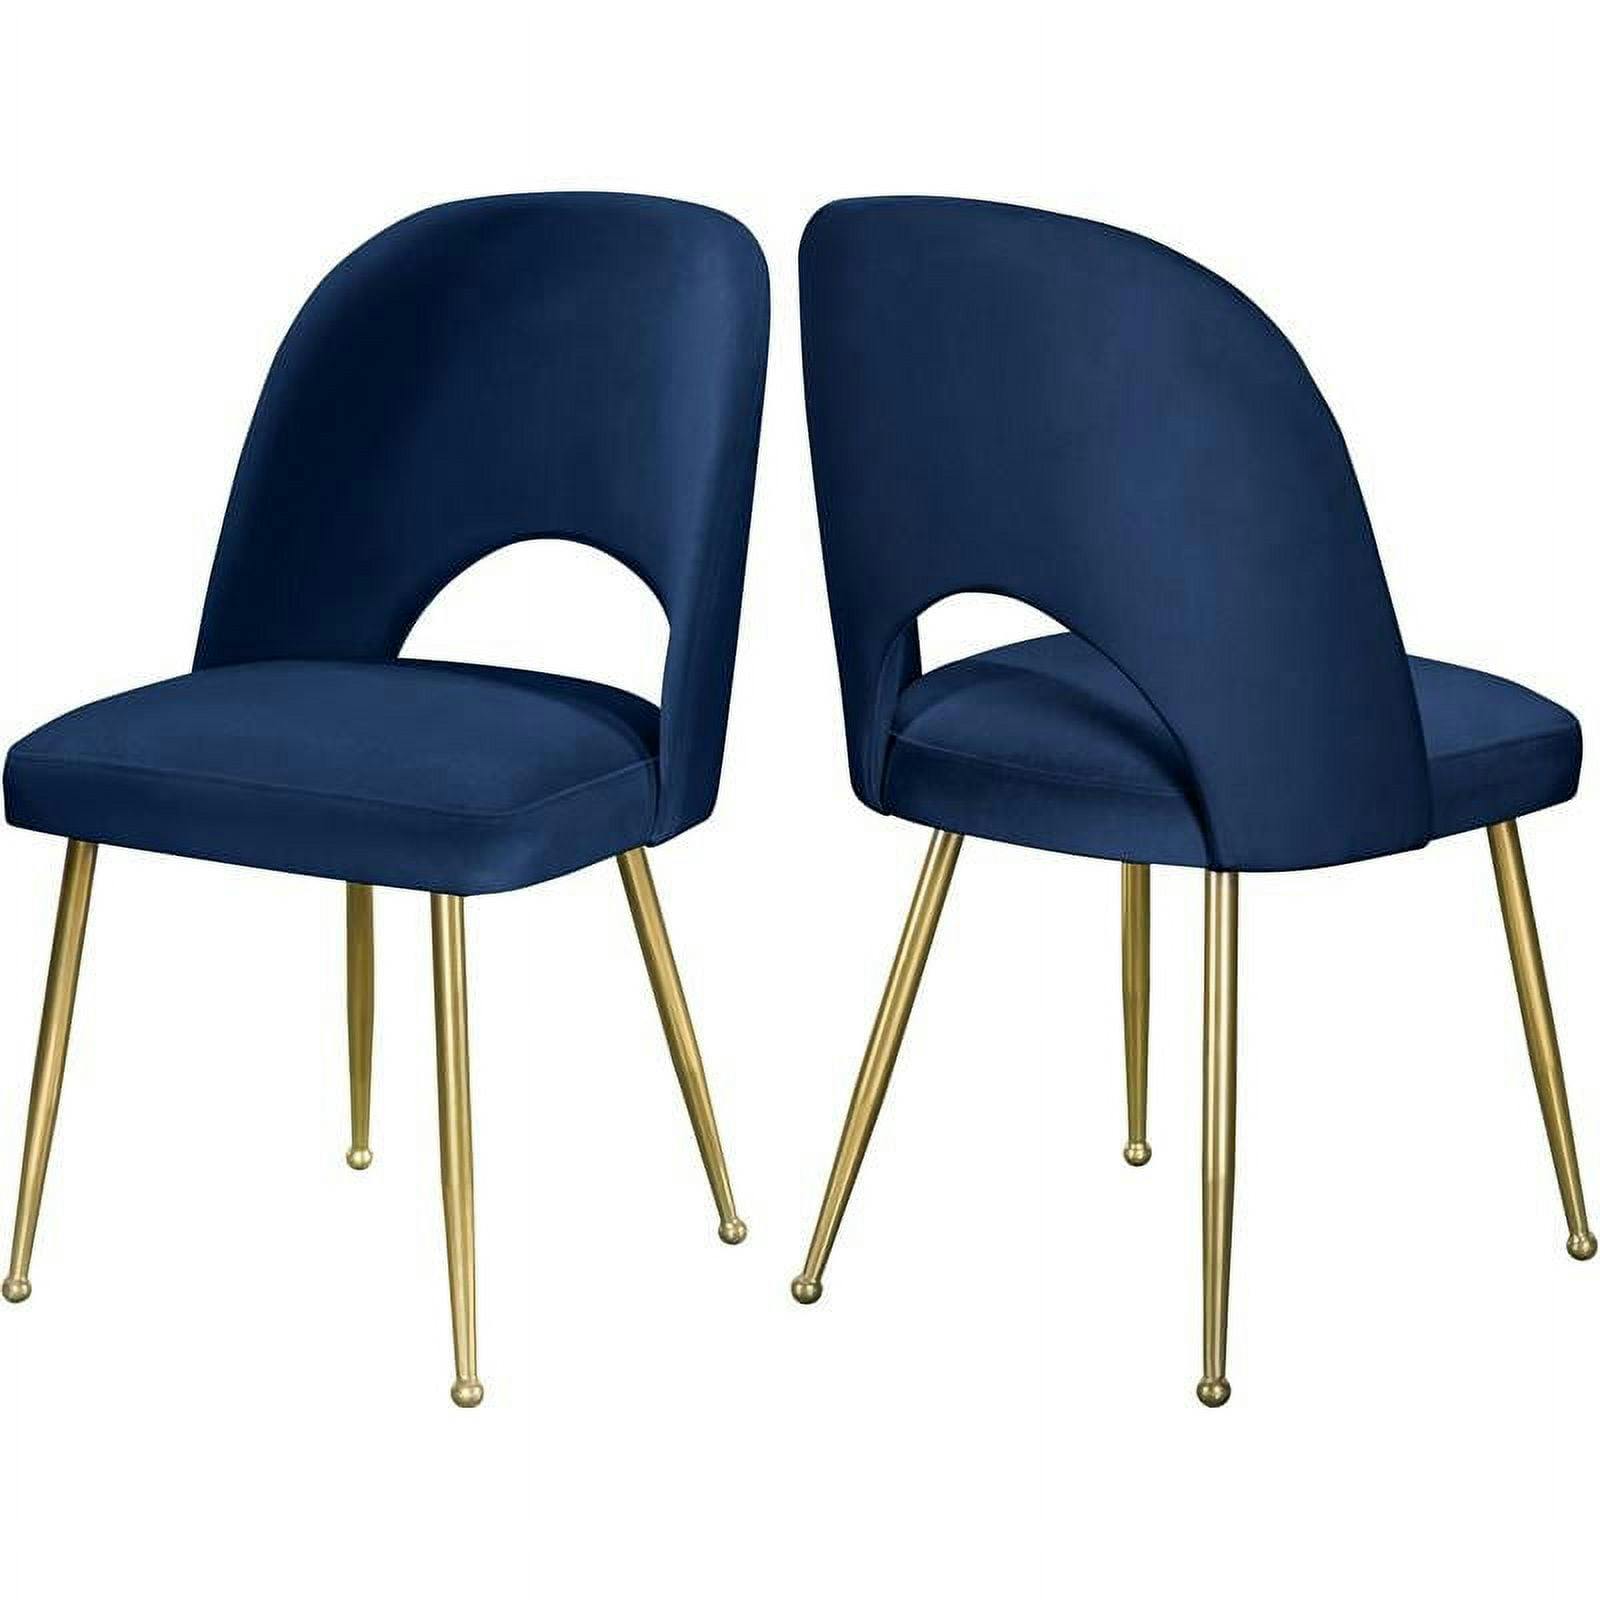 Elegant Navy Velvet Upholstered Dining Chair with Gold Ball Legs